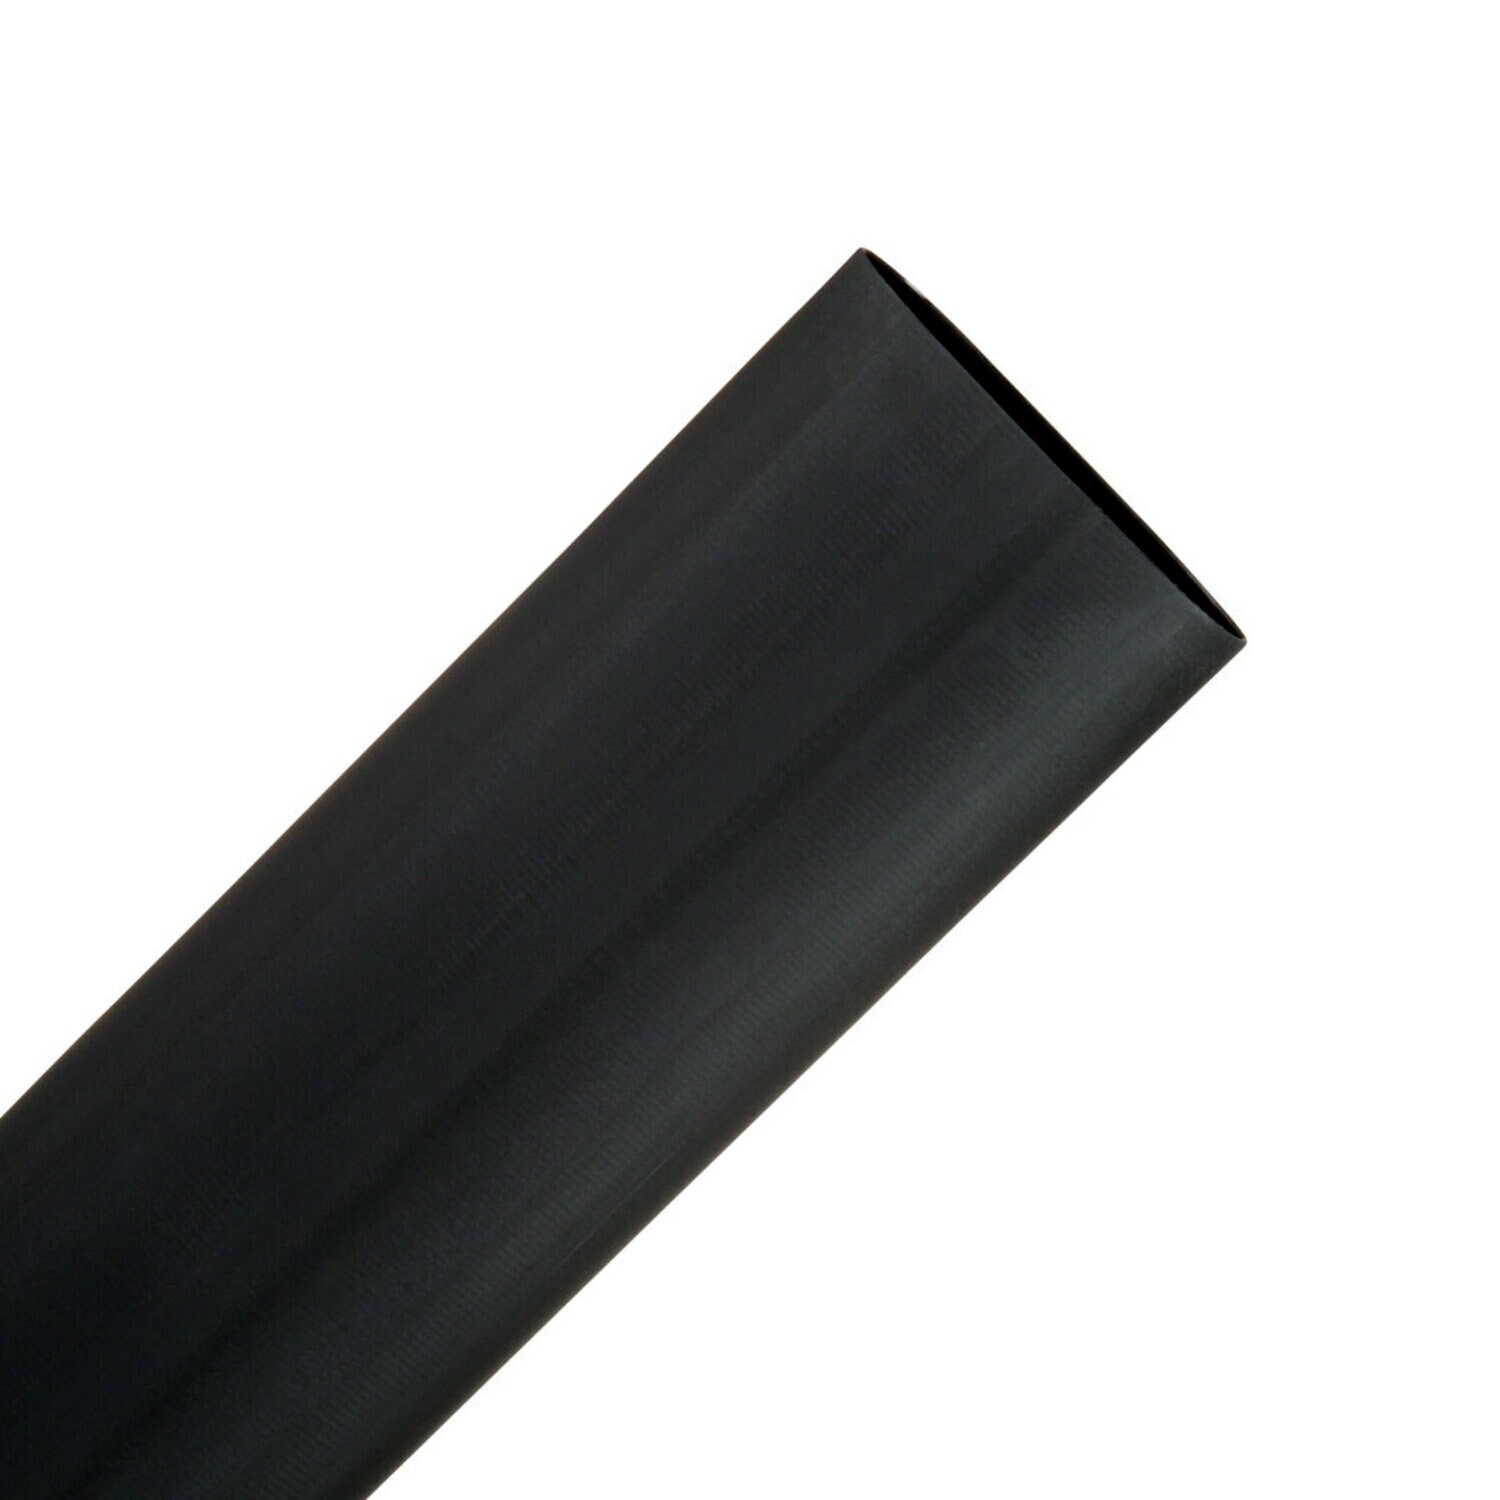 Adhesive-Y (3M-8001)